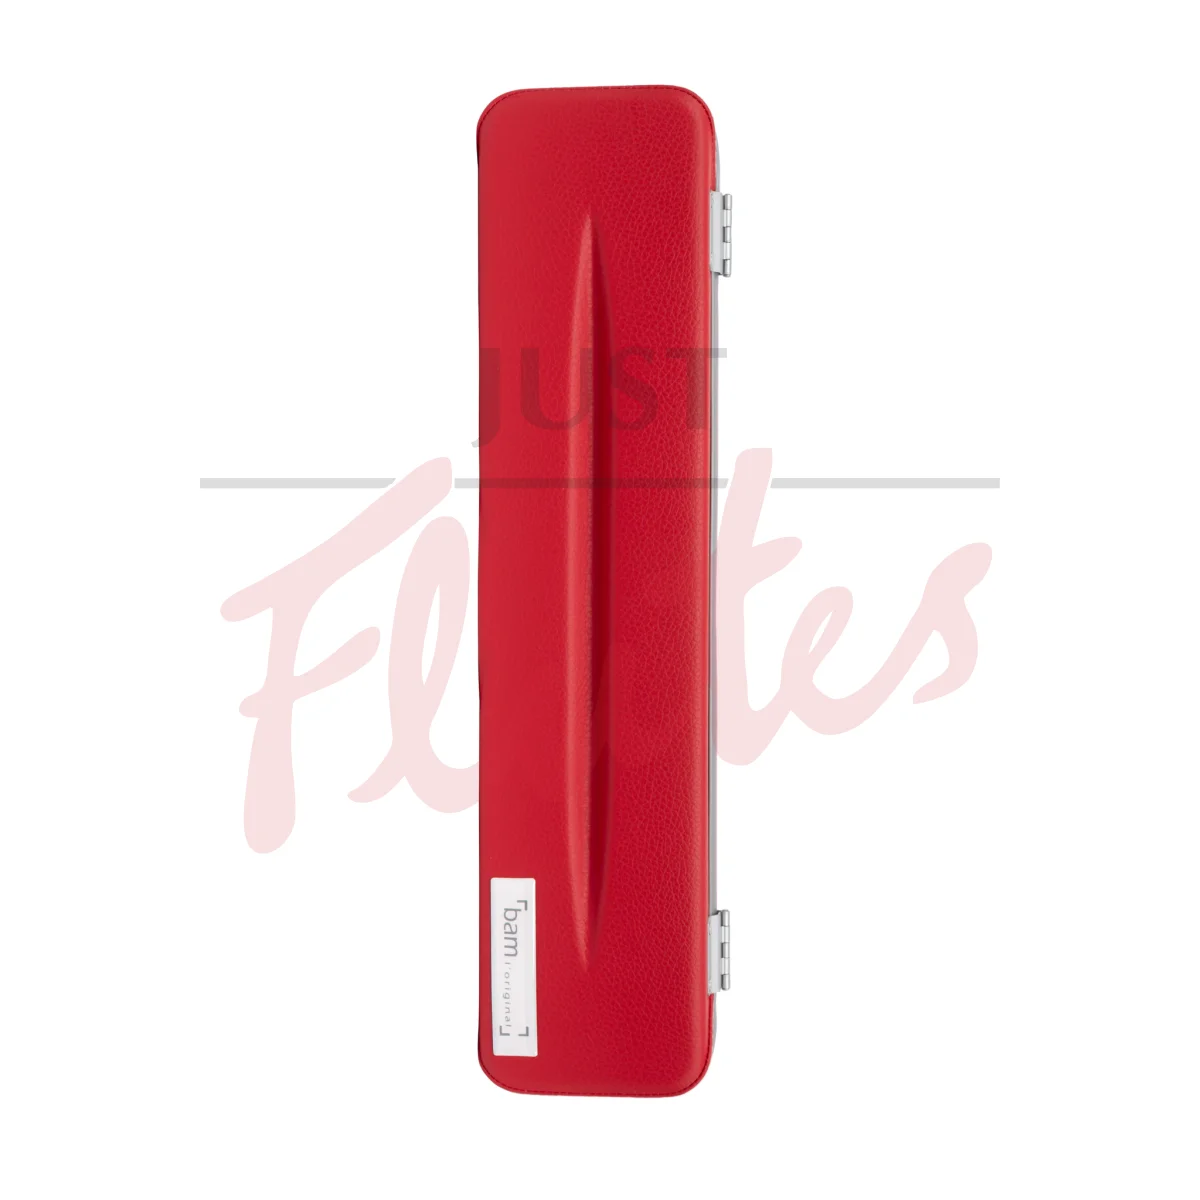 Bam ET4009XLR Hightech L'Etoile Flute Case, Red